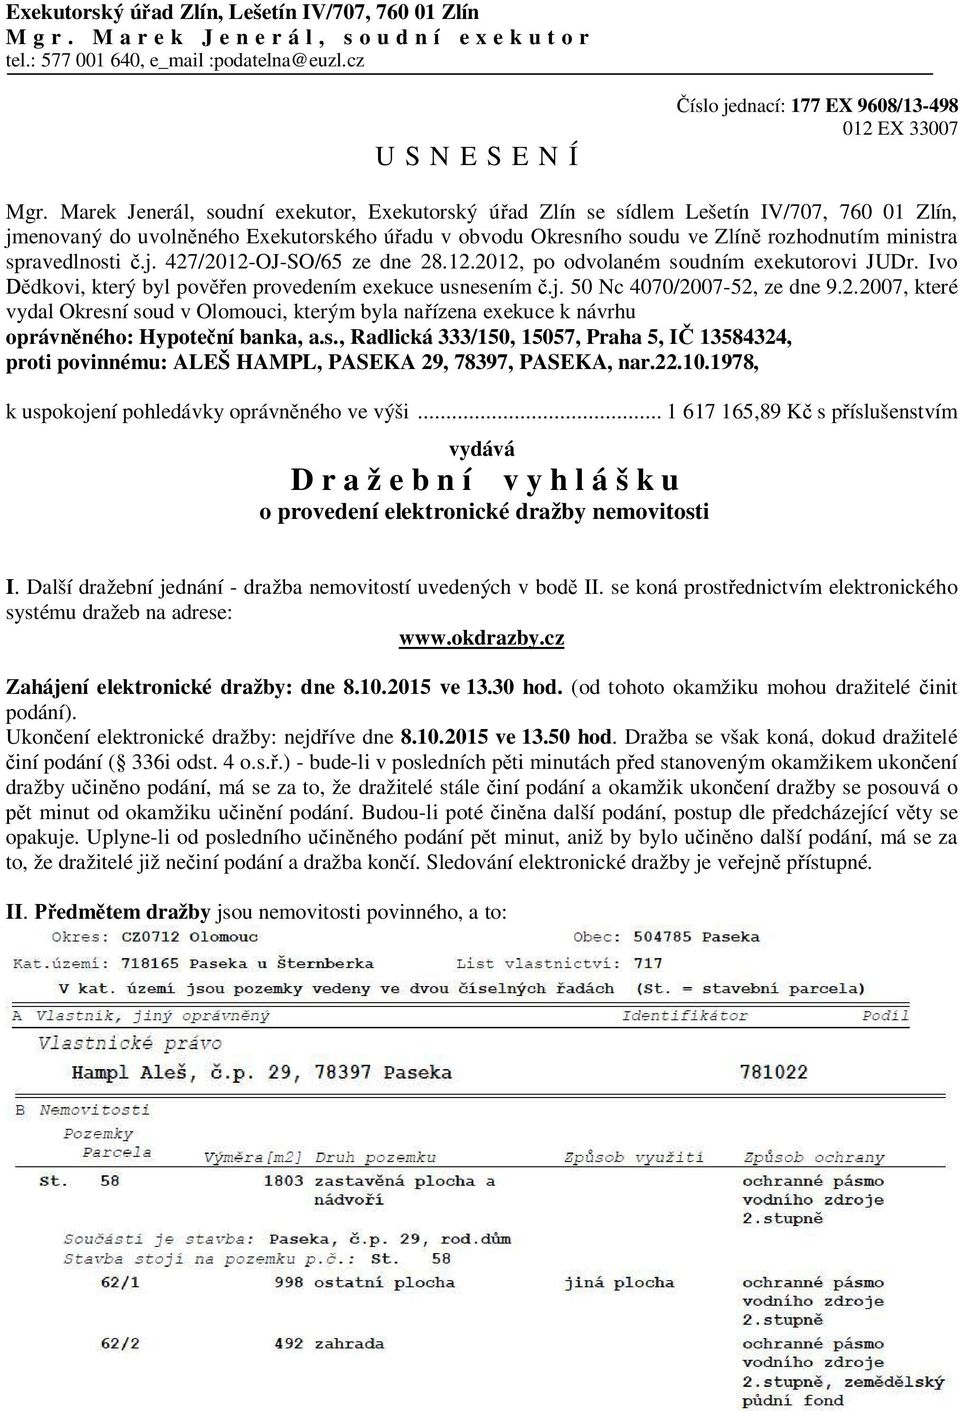 spravedlnosti č.j. 427/2012-OJ-SO/65 ze dne 28.12.2012, po odvolaném soudním exekutorovi JUDr. Ivo Dědkovi, který byl pověřen provedením exekuce usnesením č.j. 50 Nc 4070/2007-52, ze dne 9.2.2007, které vydal Okresní soud v Olomouci, kterým byla nařízena exekuce k návrhu oprávněného: Hypoteční banka, a.